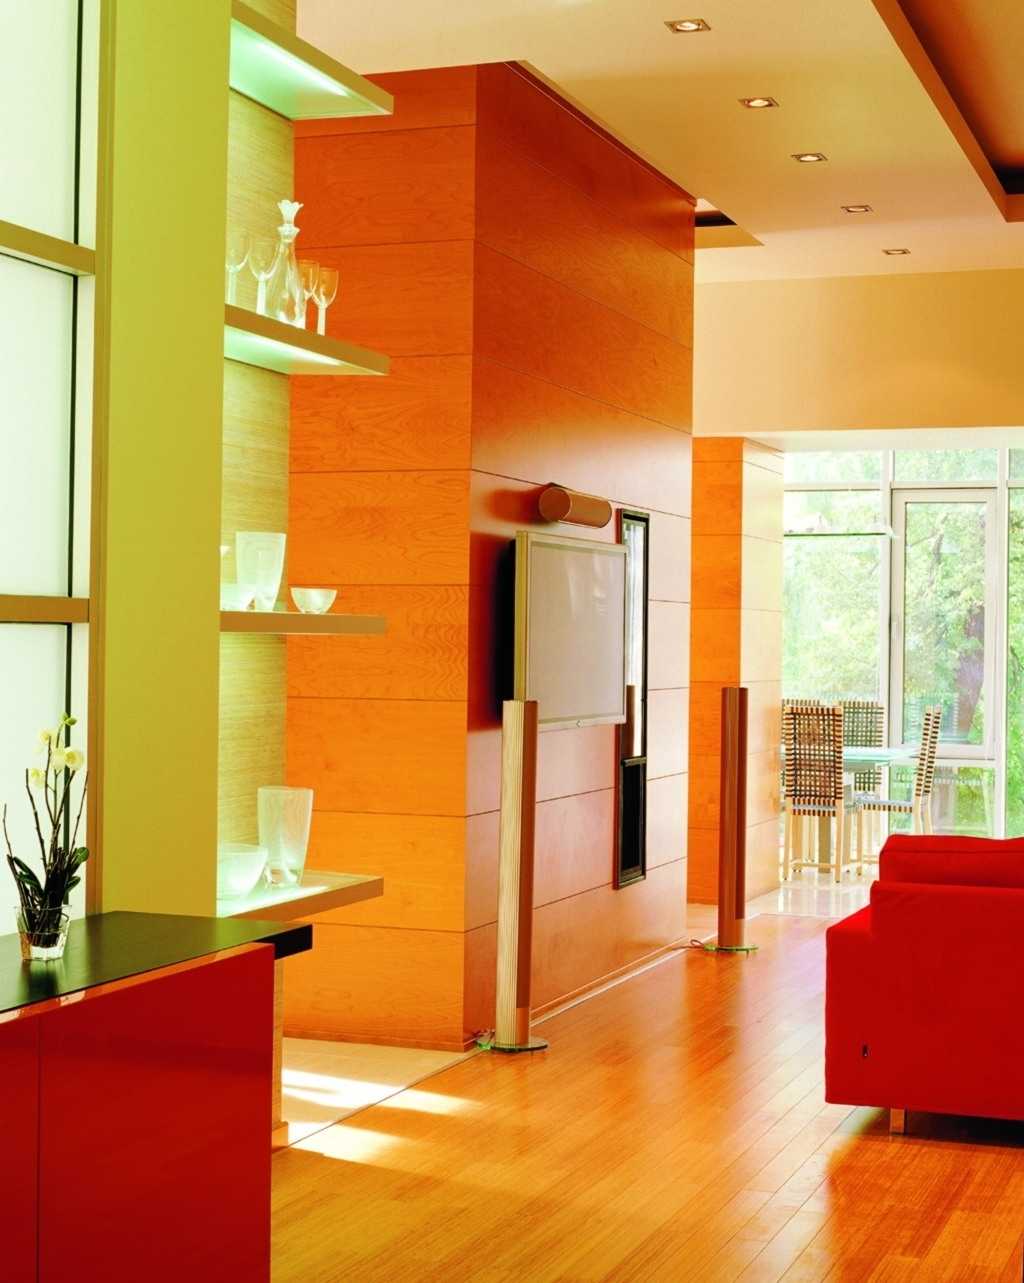 interior-design-orange-walls-colors